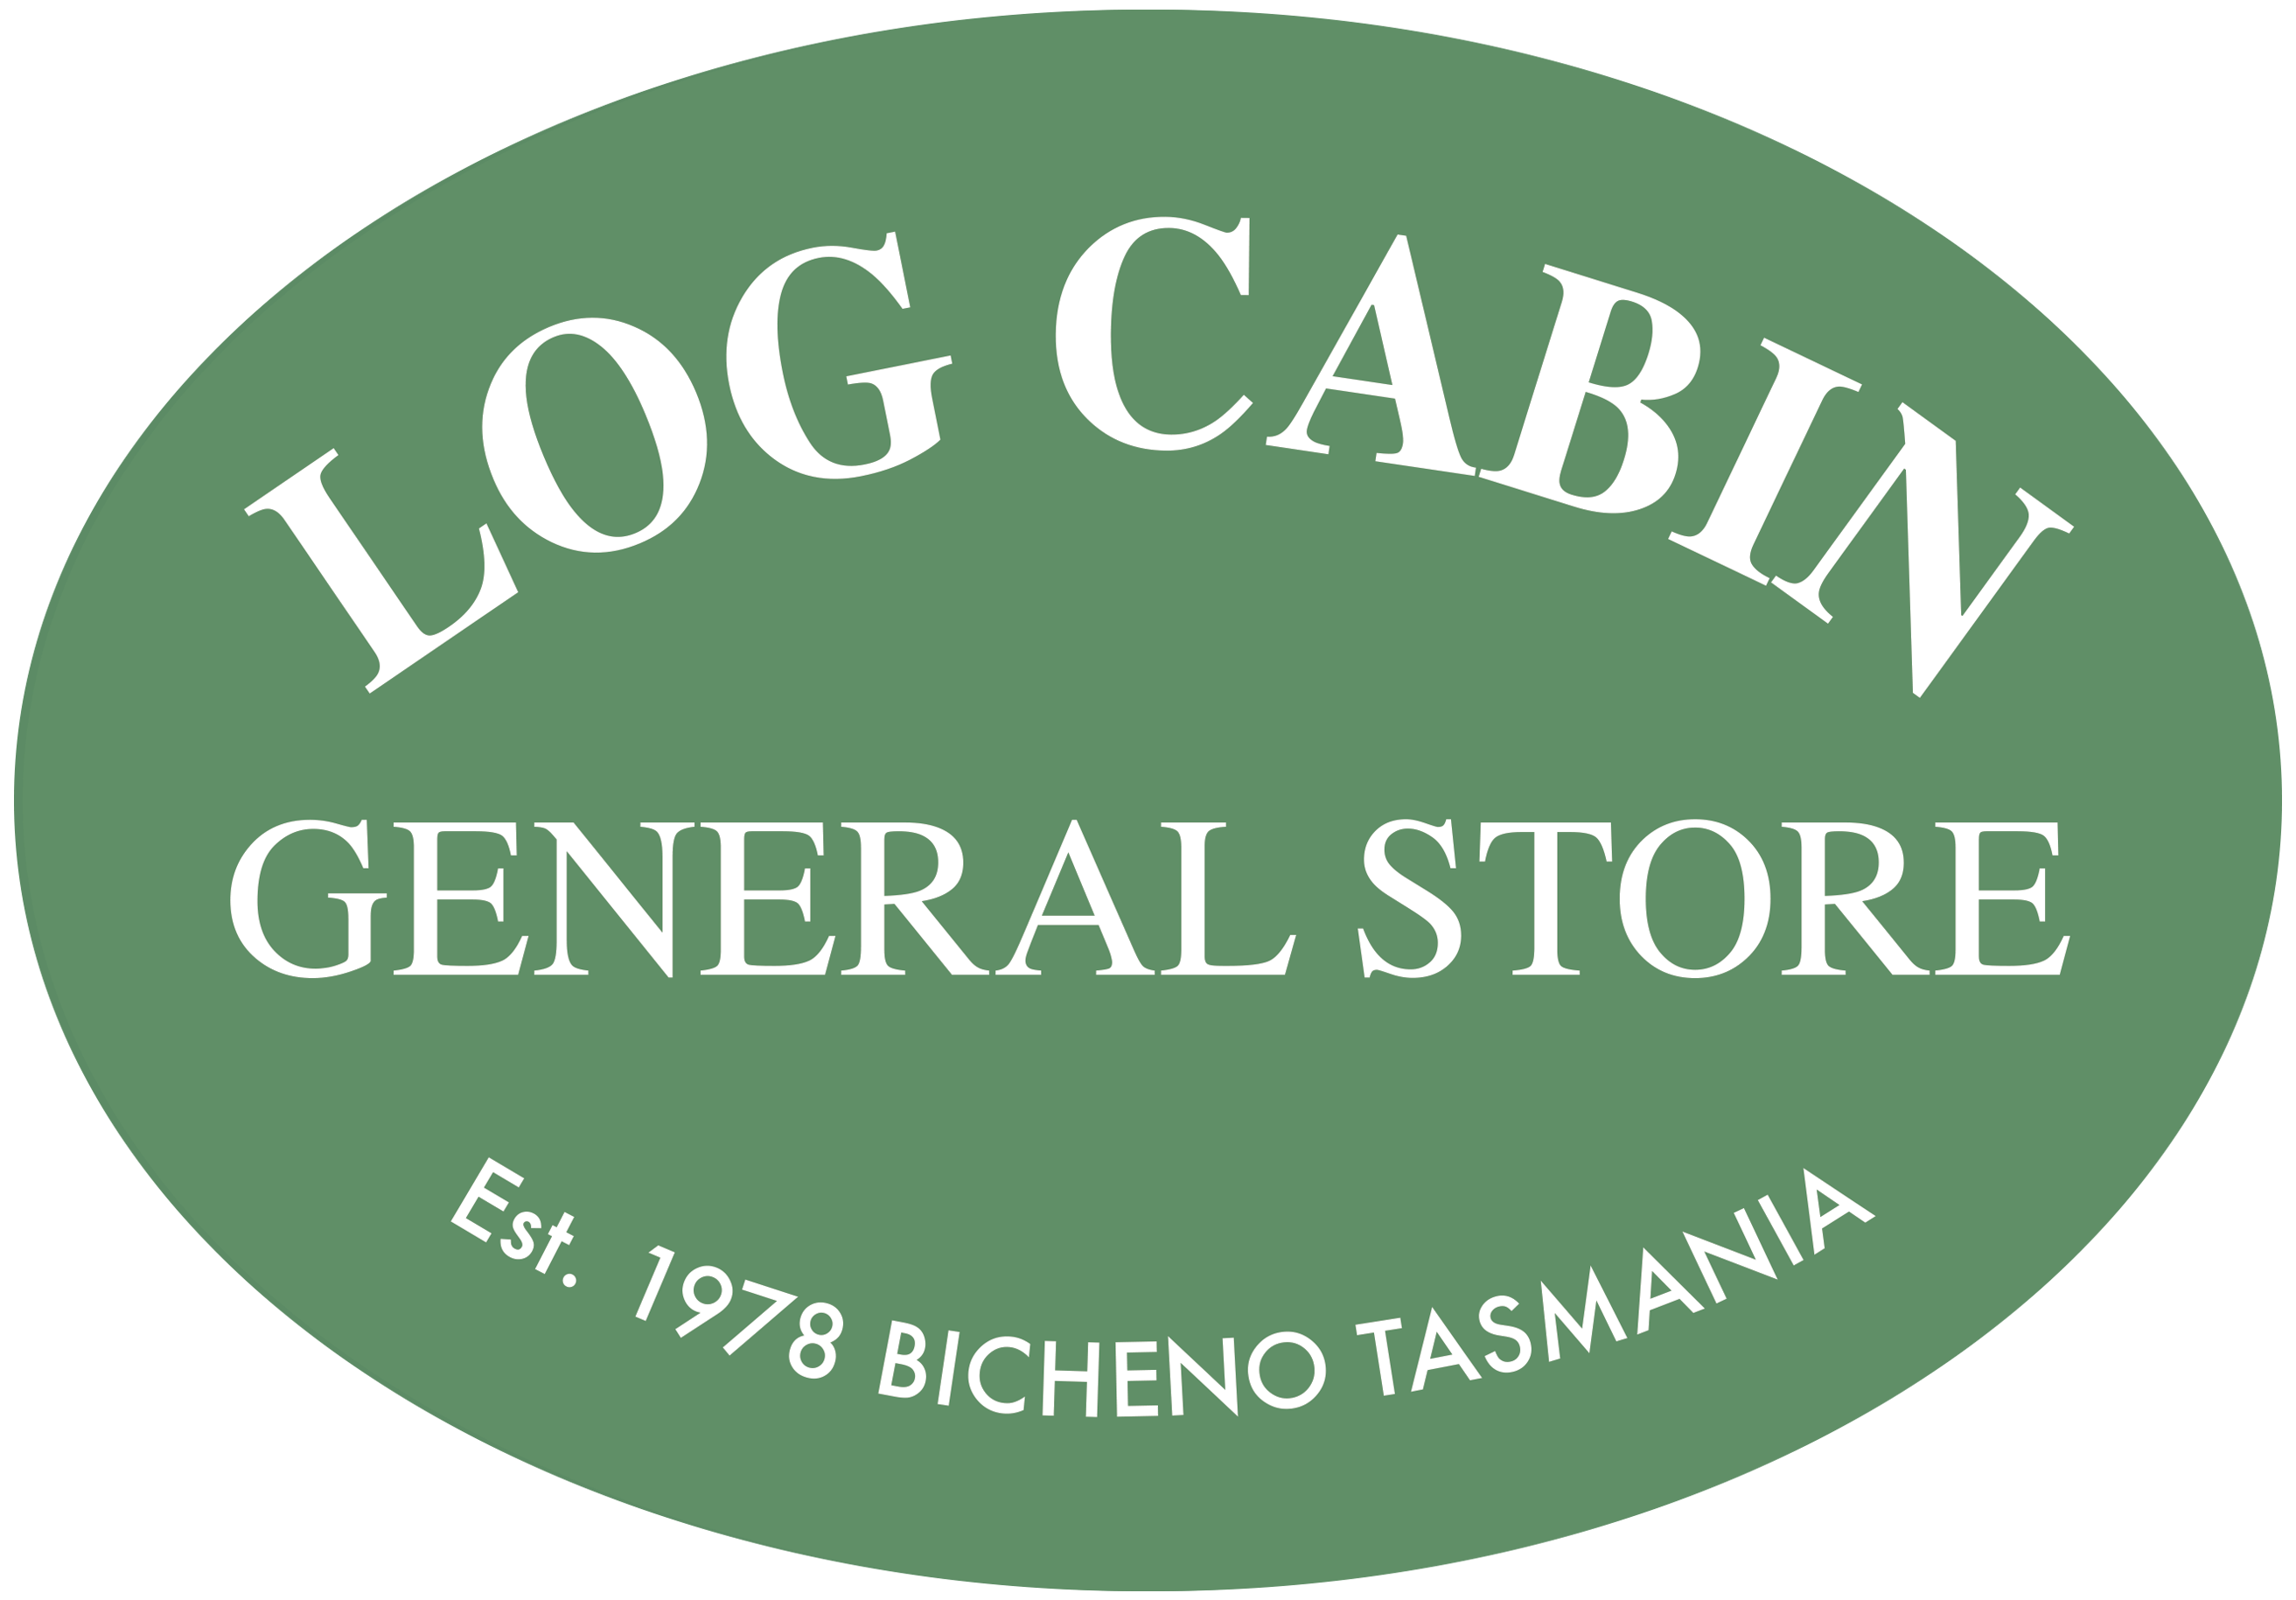 Log Cabin General Store